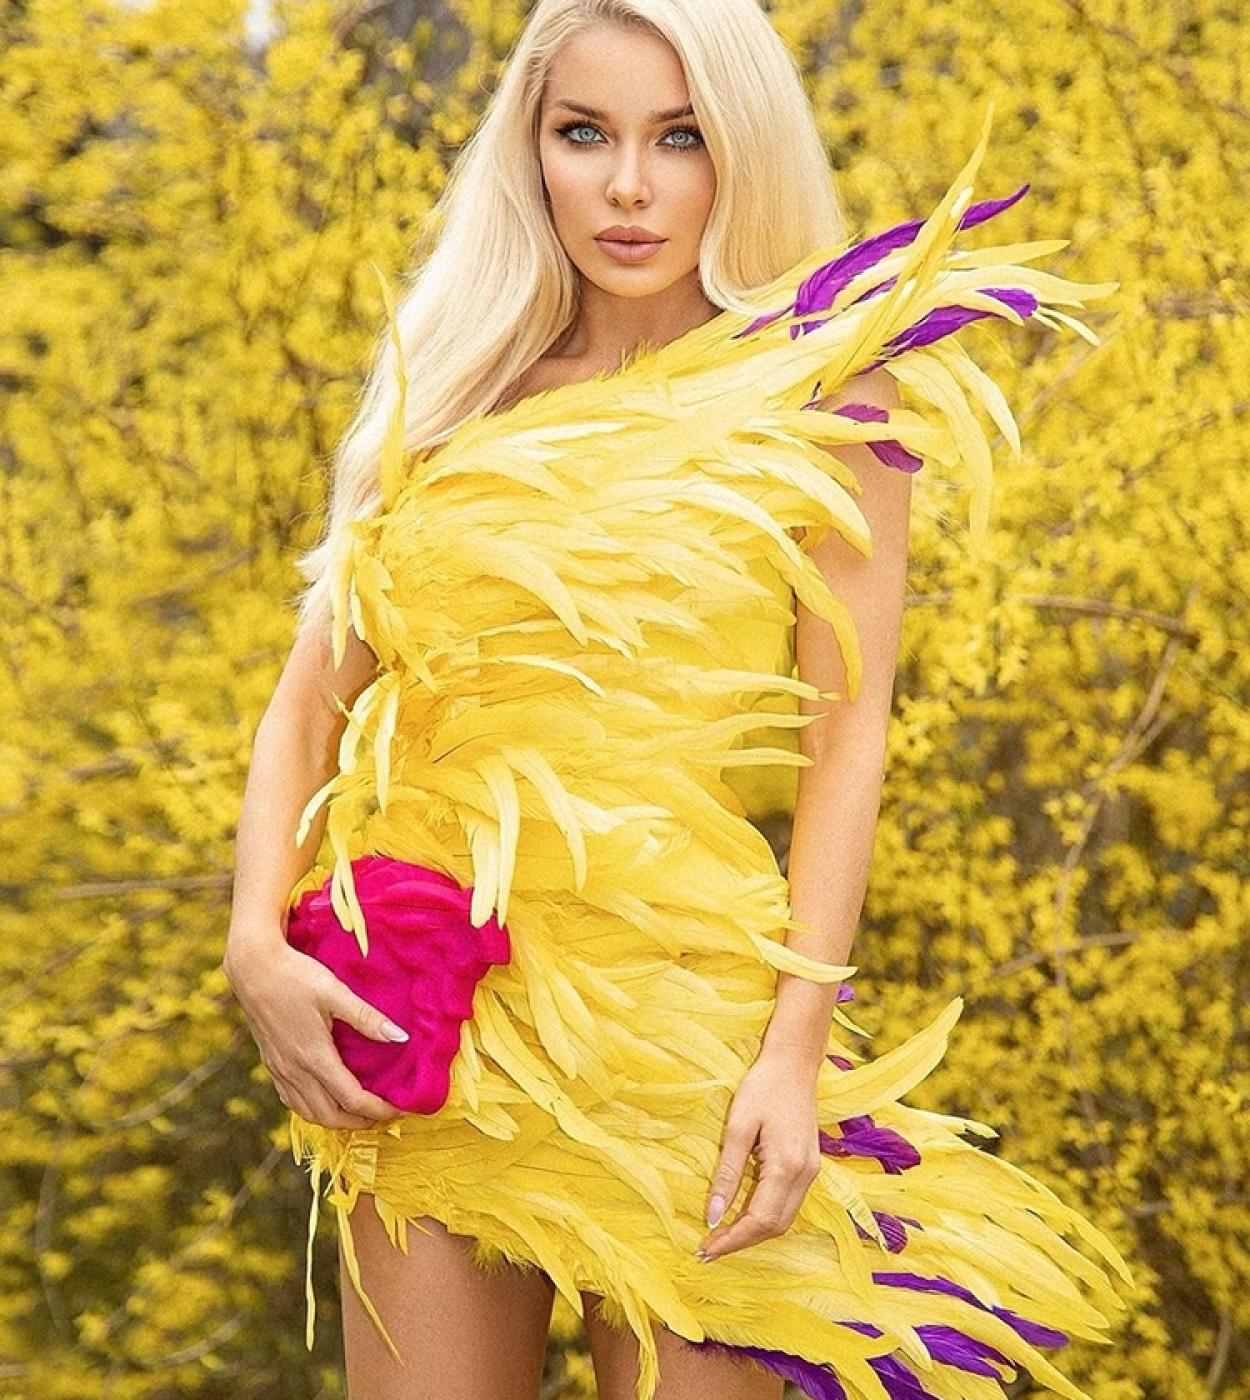 כתף אחת נוצות bodycon שמלת מיני יוקרה אלגנטית נוצות צהובות ללא שרוולים שמלה דקה שמלת ערב לנשים